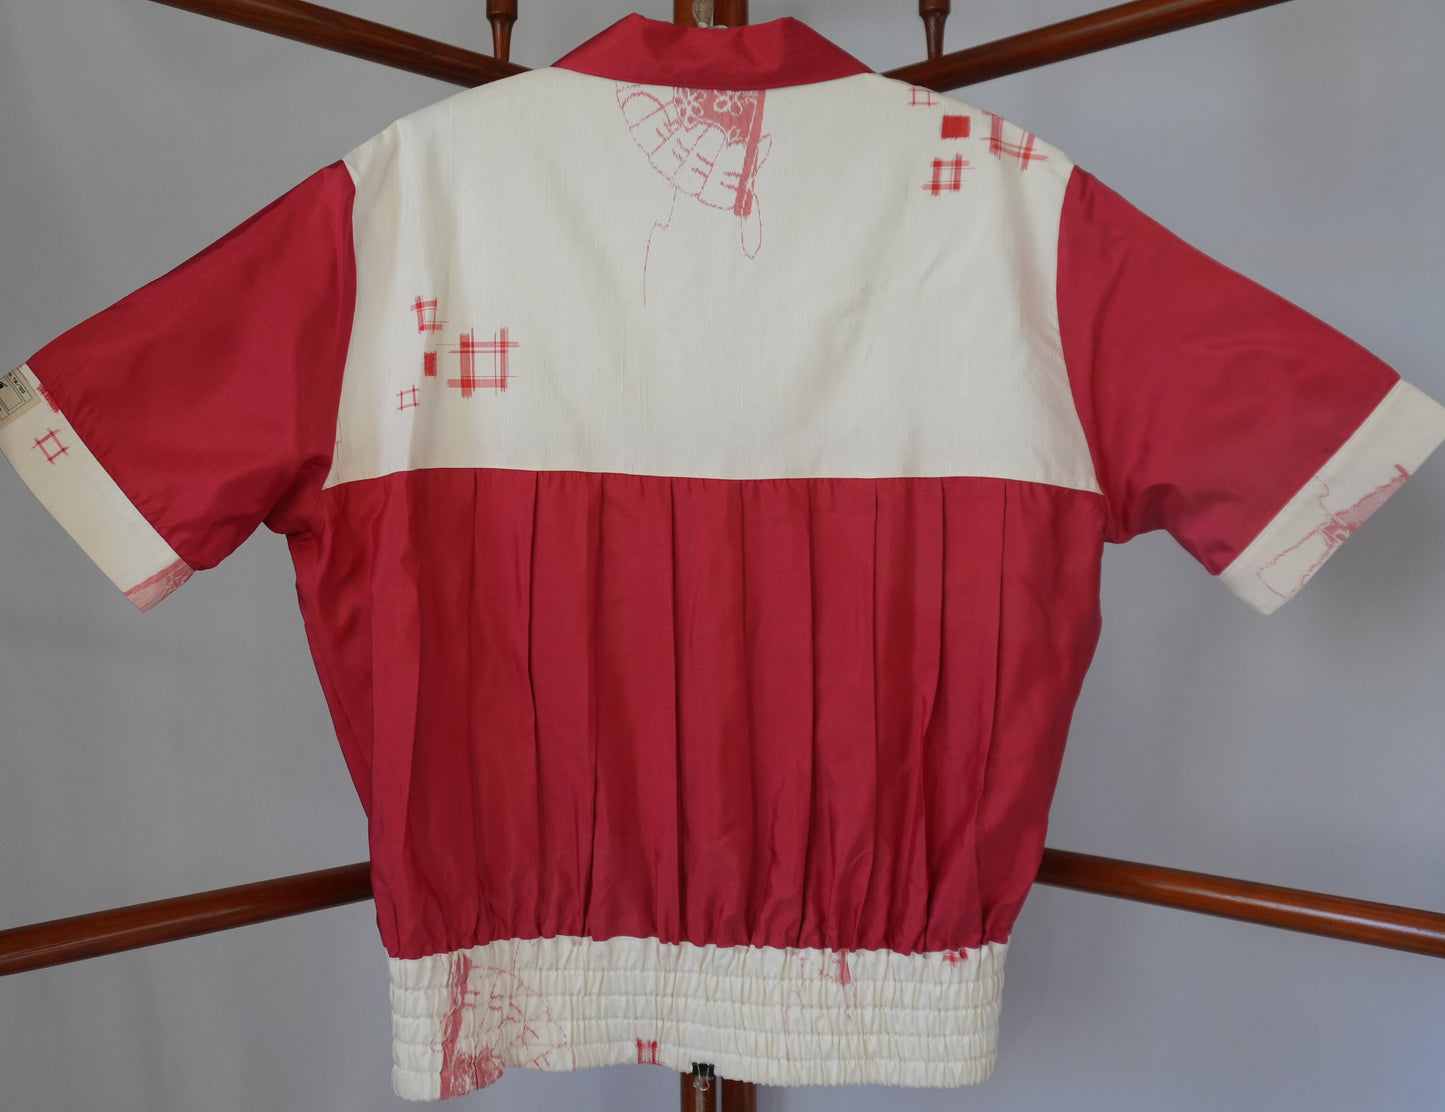 L Size Light Red Silk Shirt (No. 79/100)